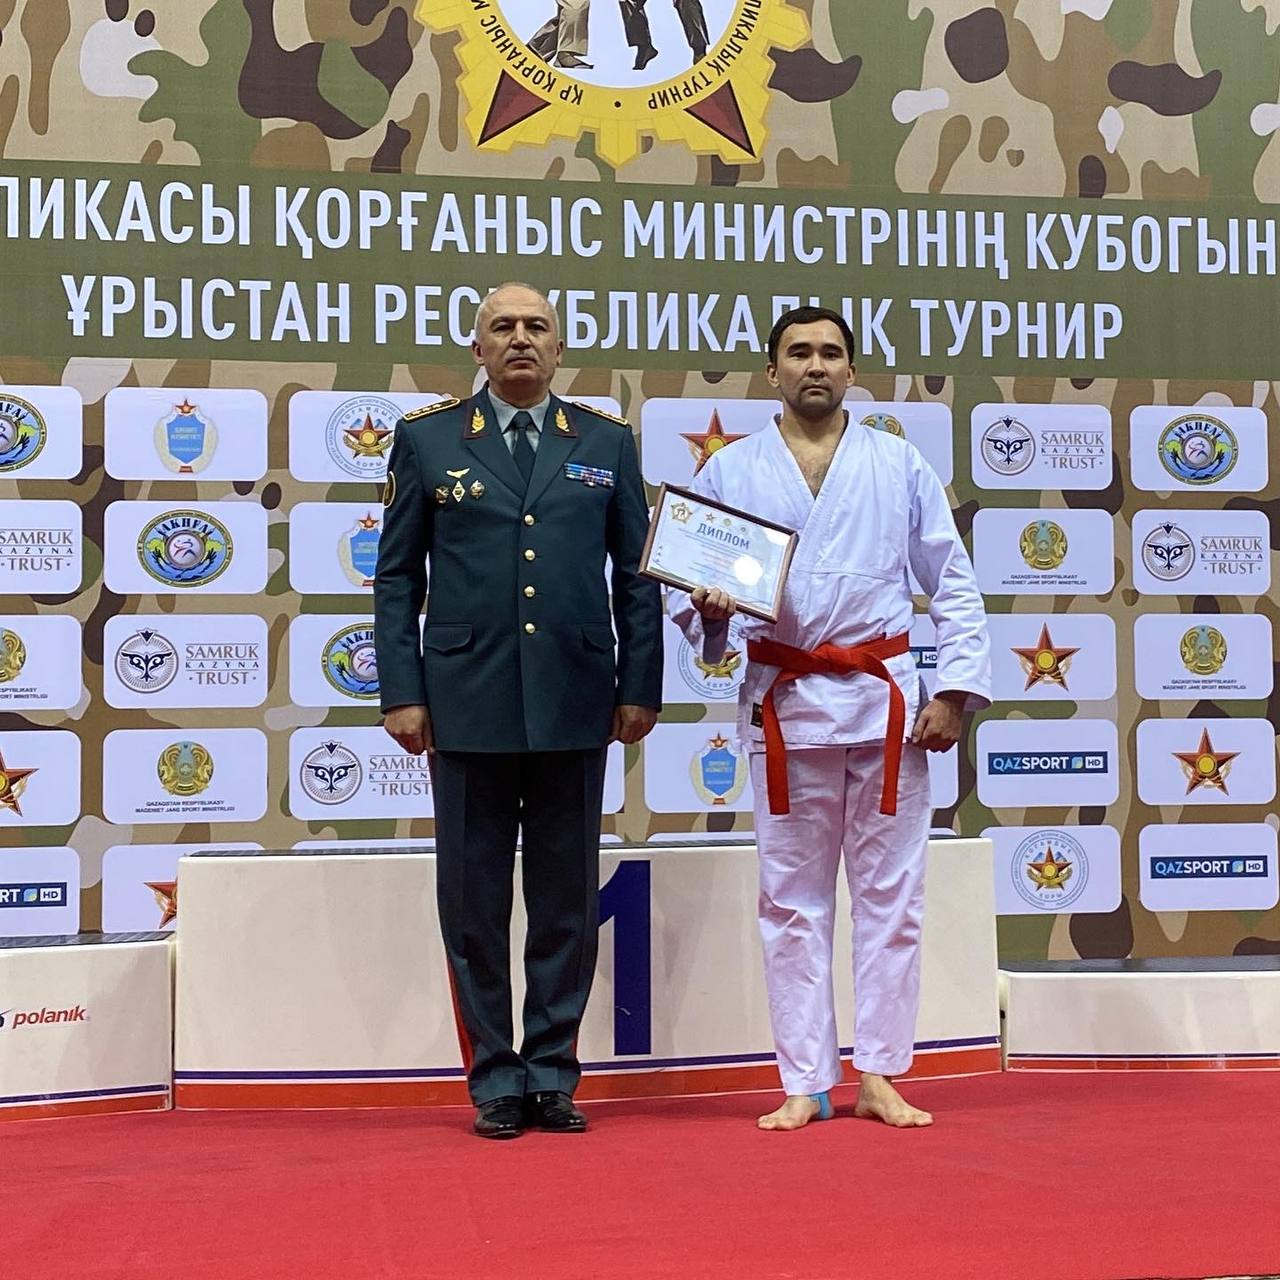 Астана қаласында ҚР Қорғаныс министрінің кубогына арналған республикалық турнир өтті